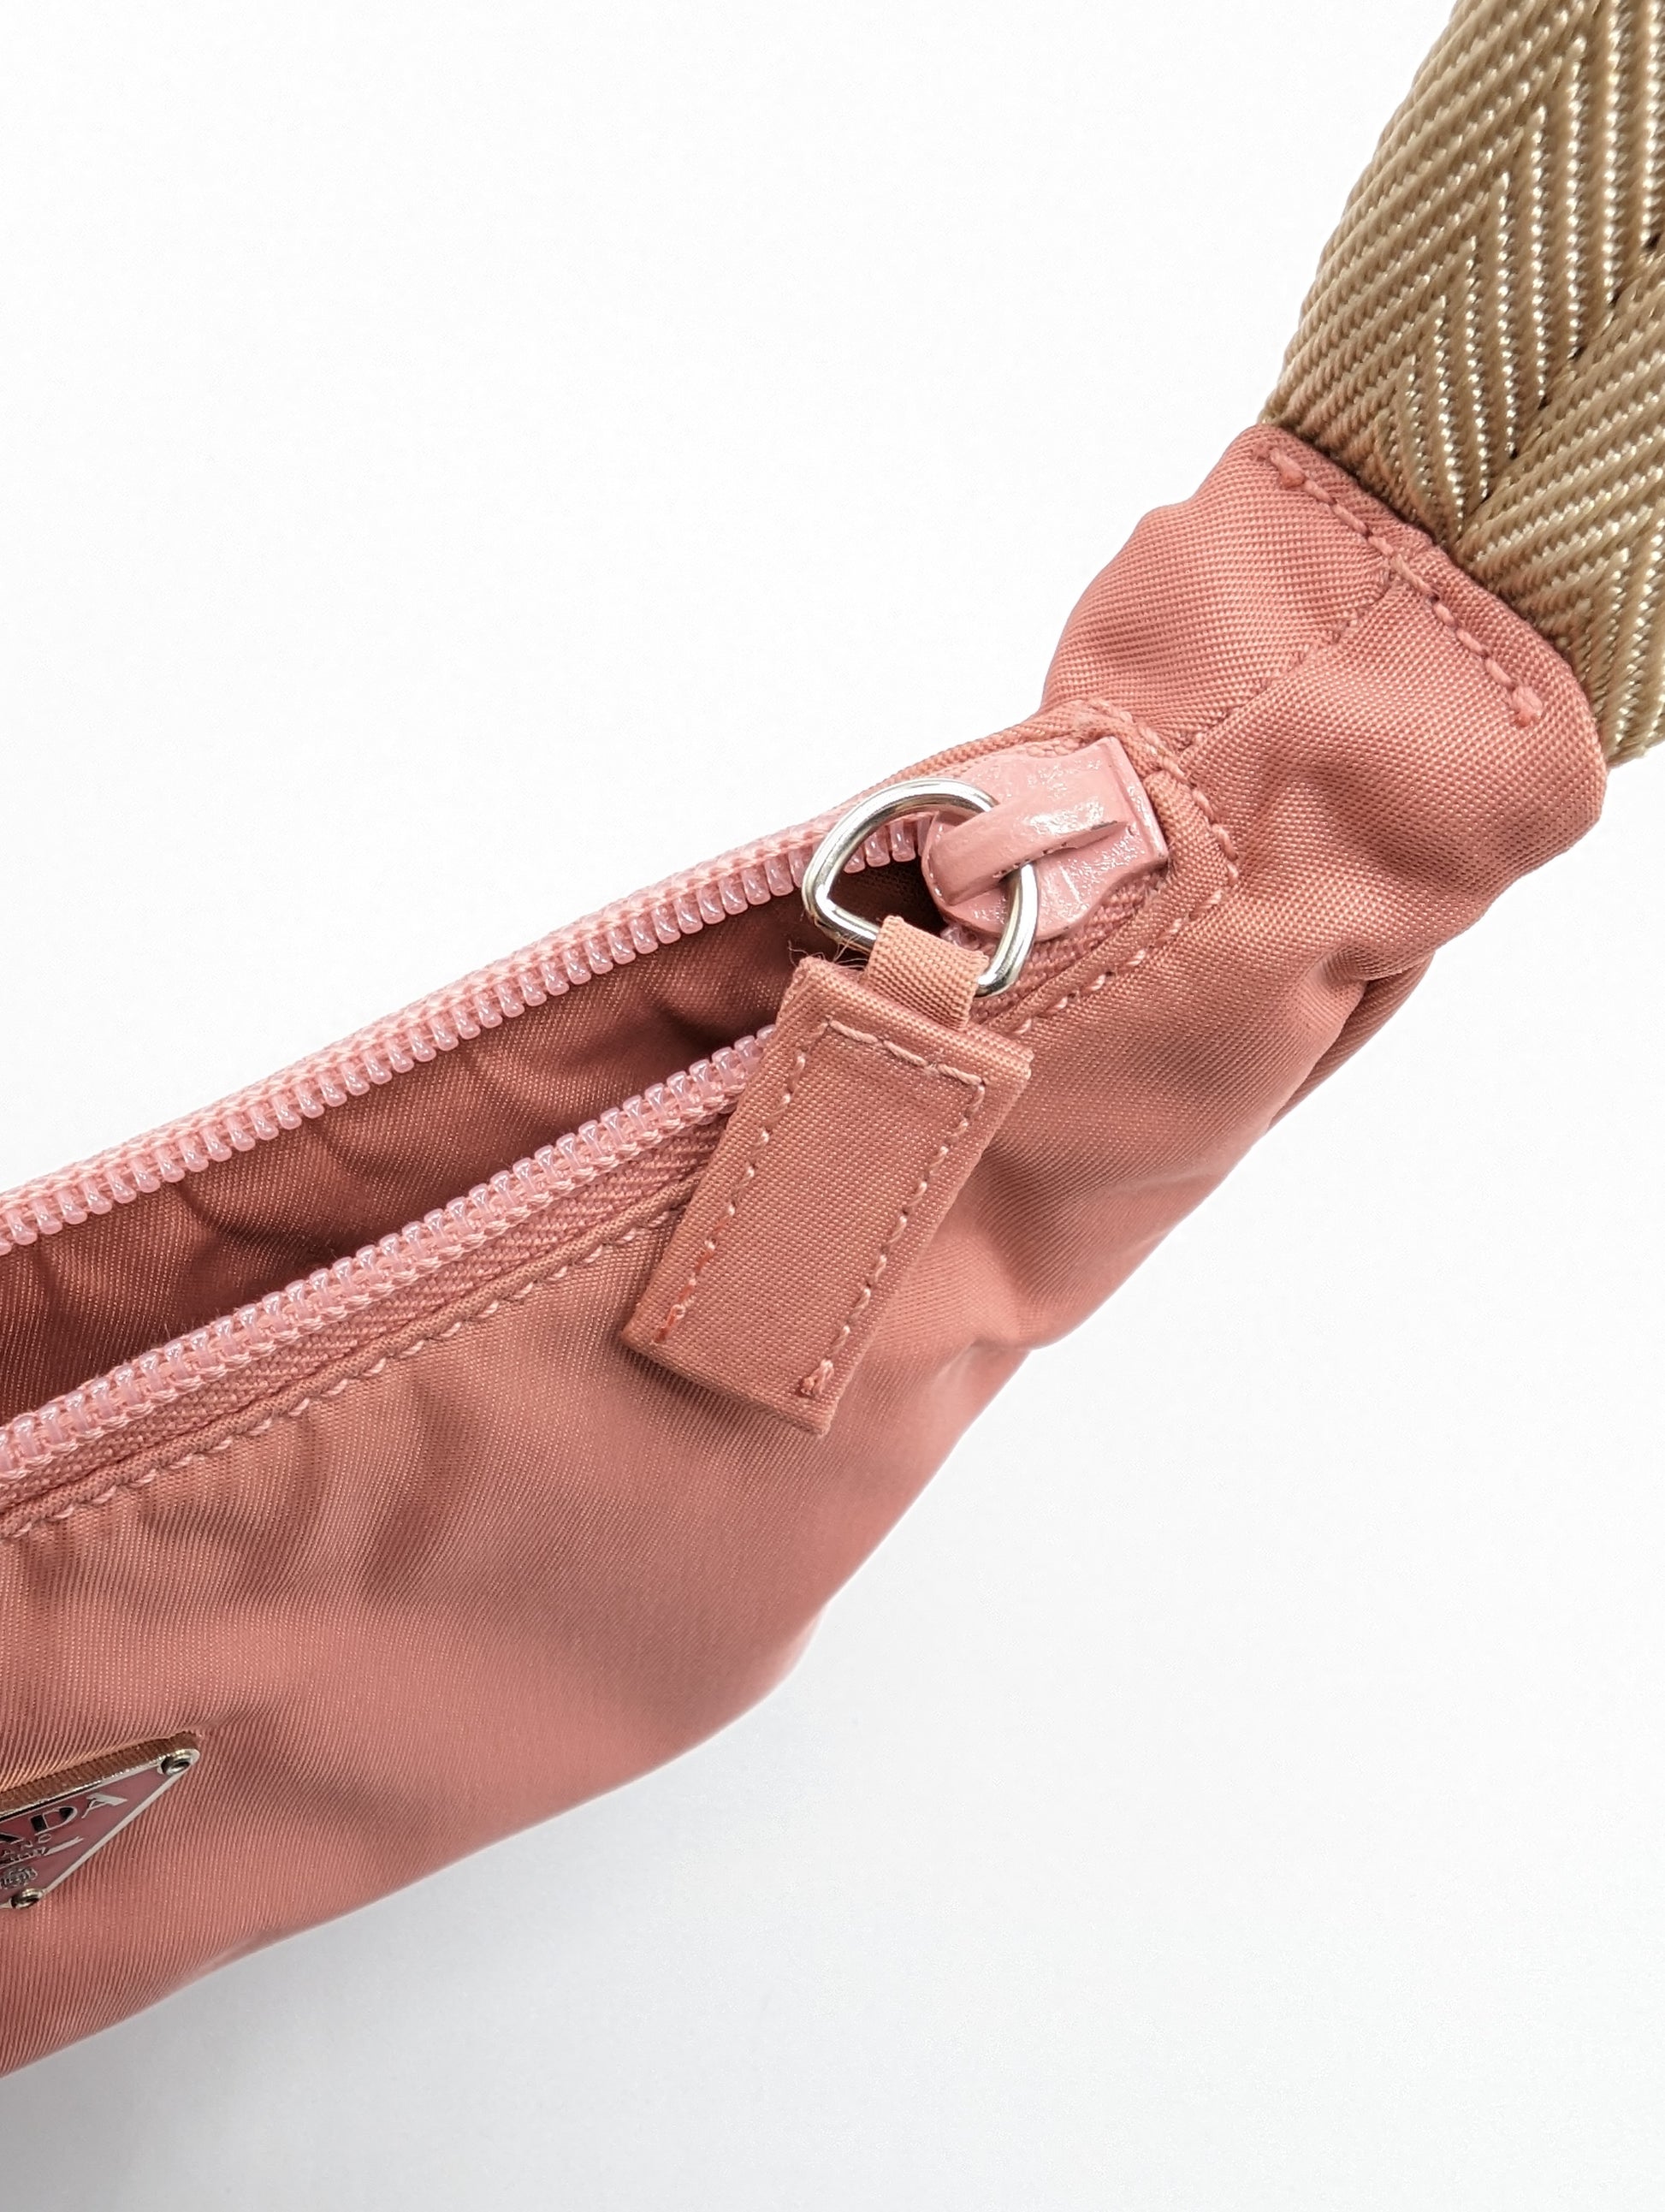 Vintage Prada Pink Nylon Crossbody Bag